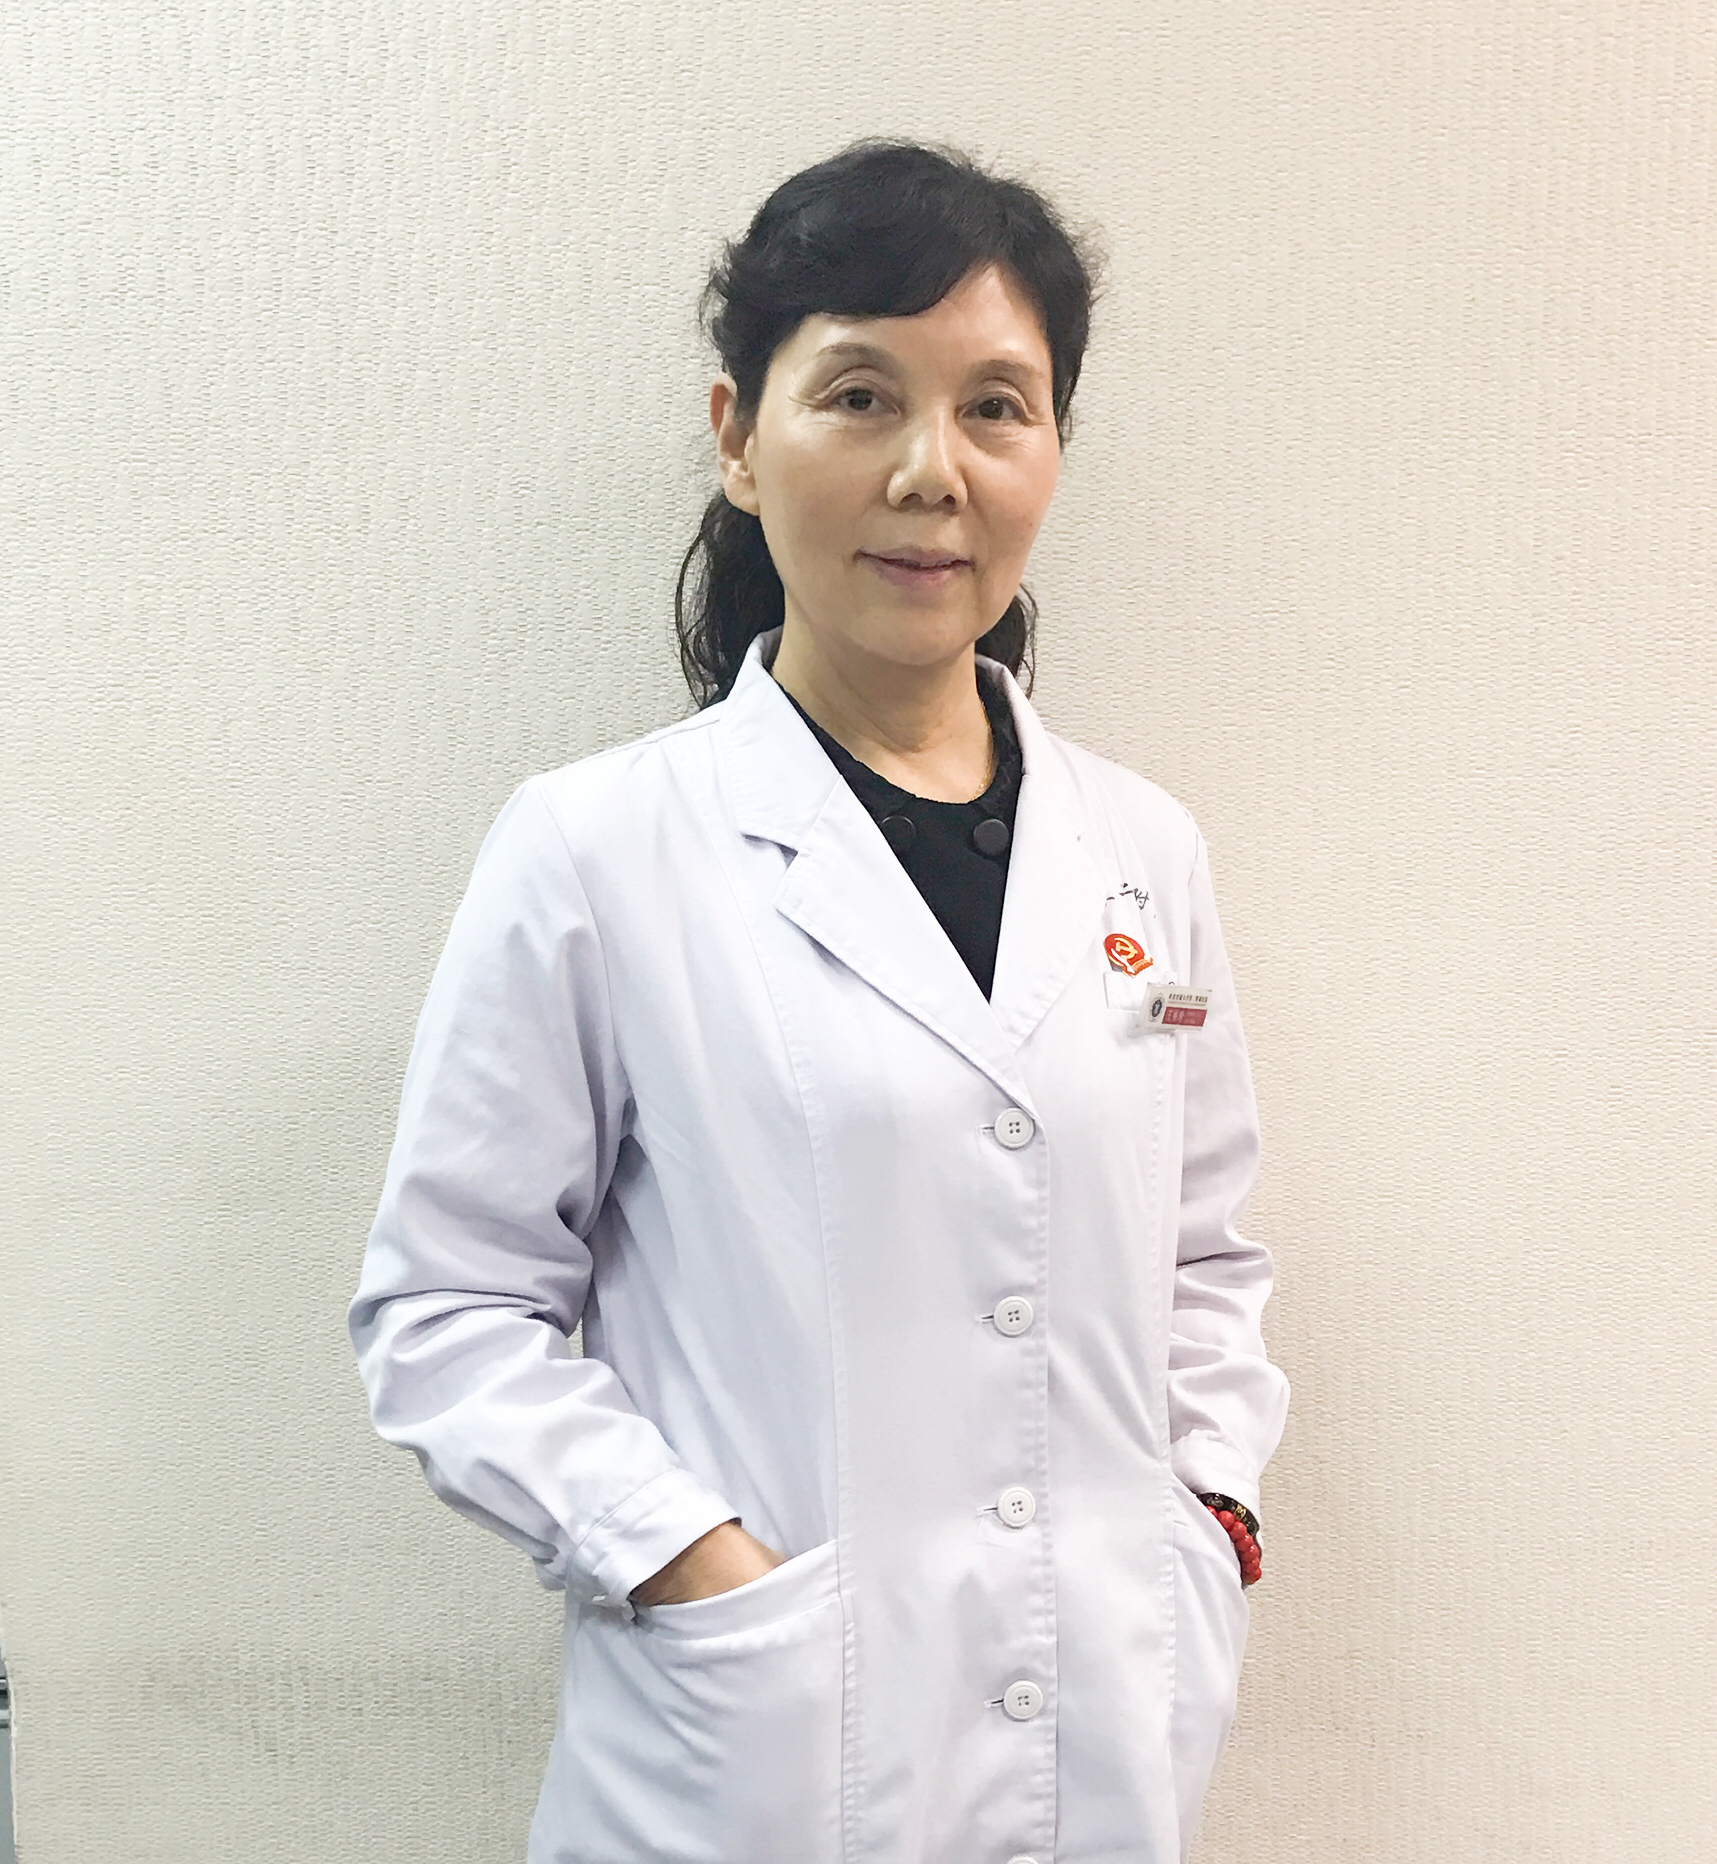 西安交通大学医学院第二附属医院主任技师王香玲照片